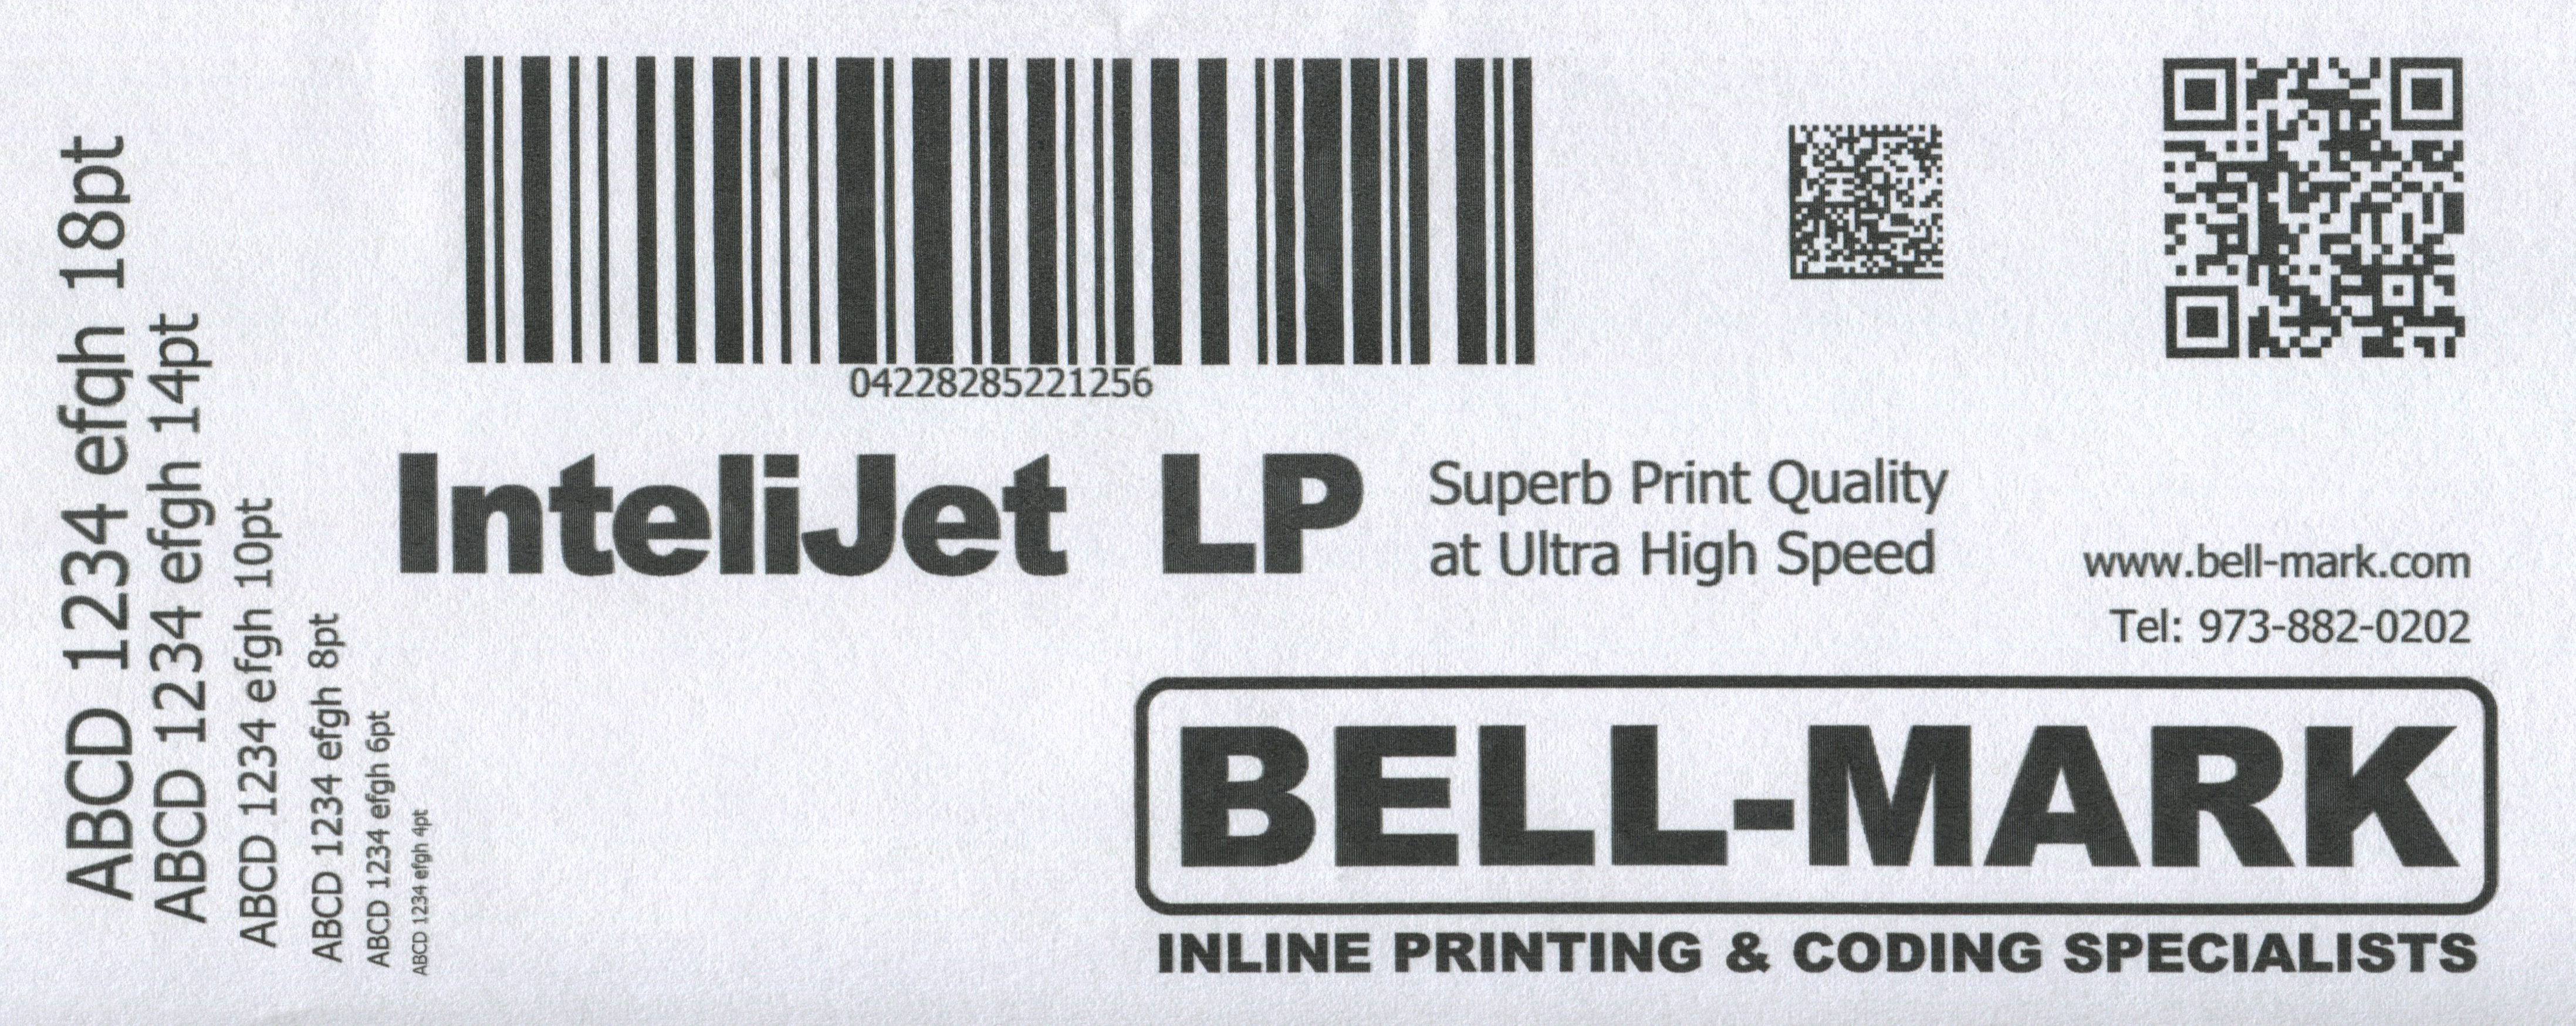 InteliJet LP printed sample